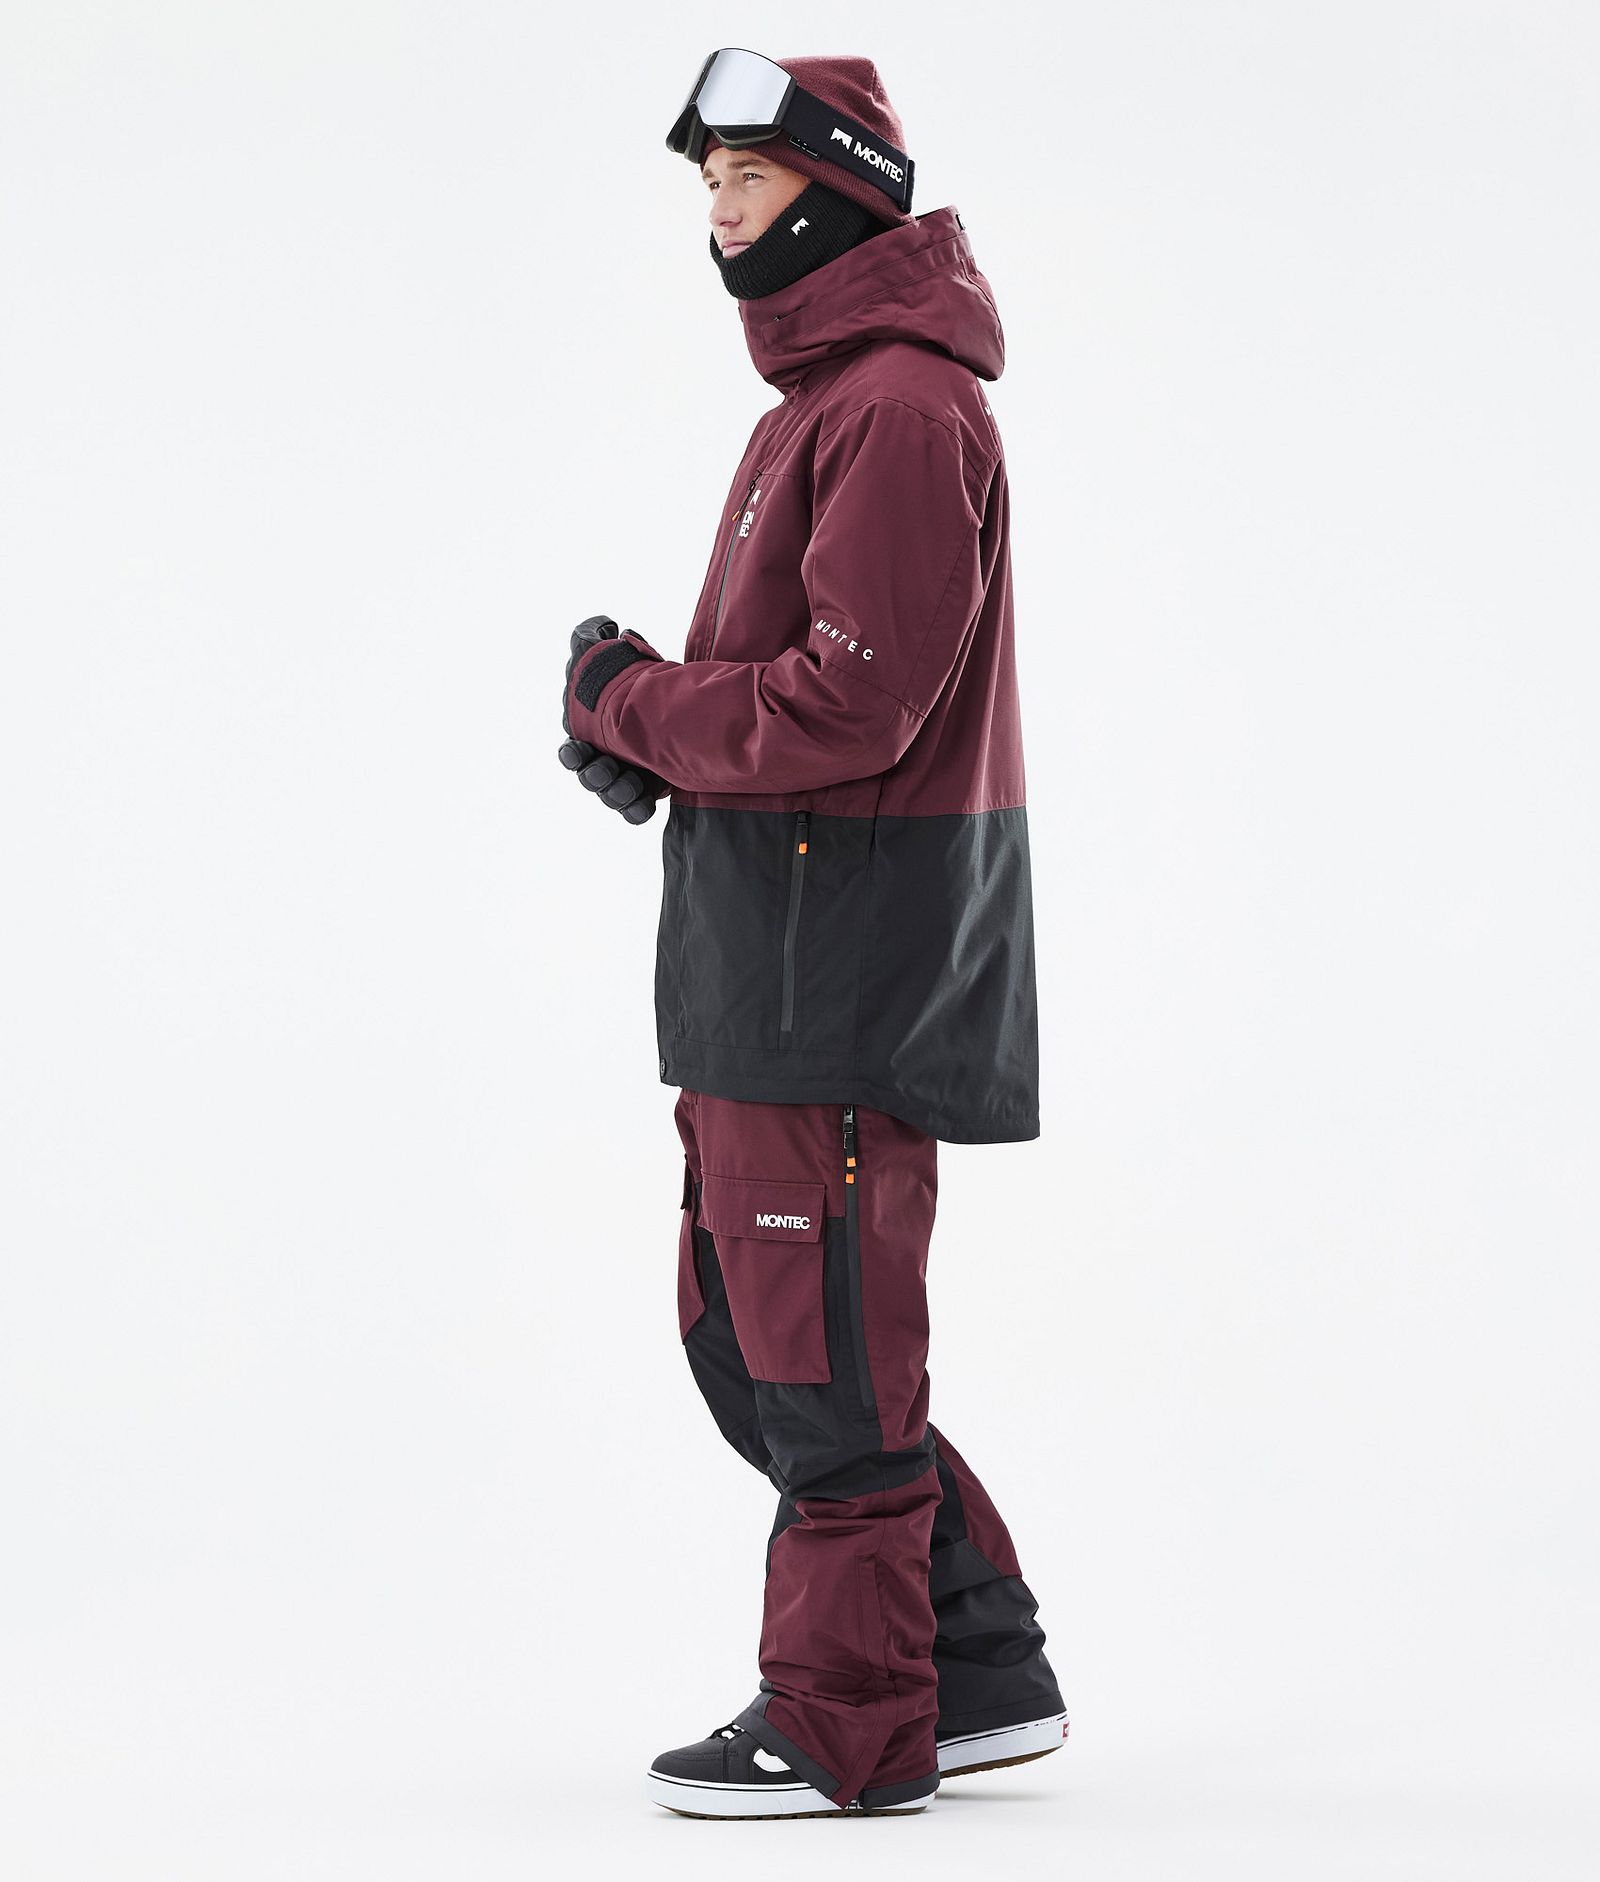 Fawk Veste Snowboard Homme Burgundy/Black